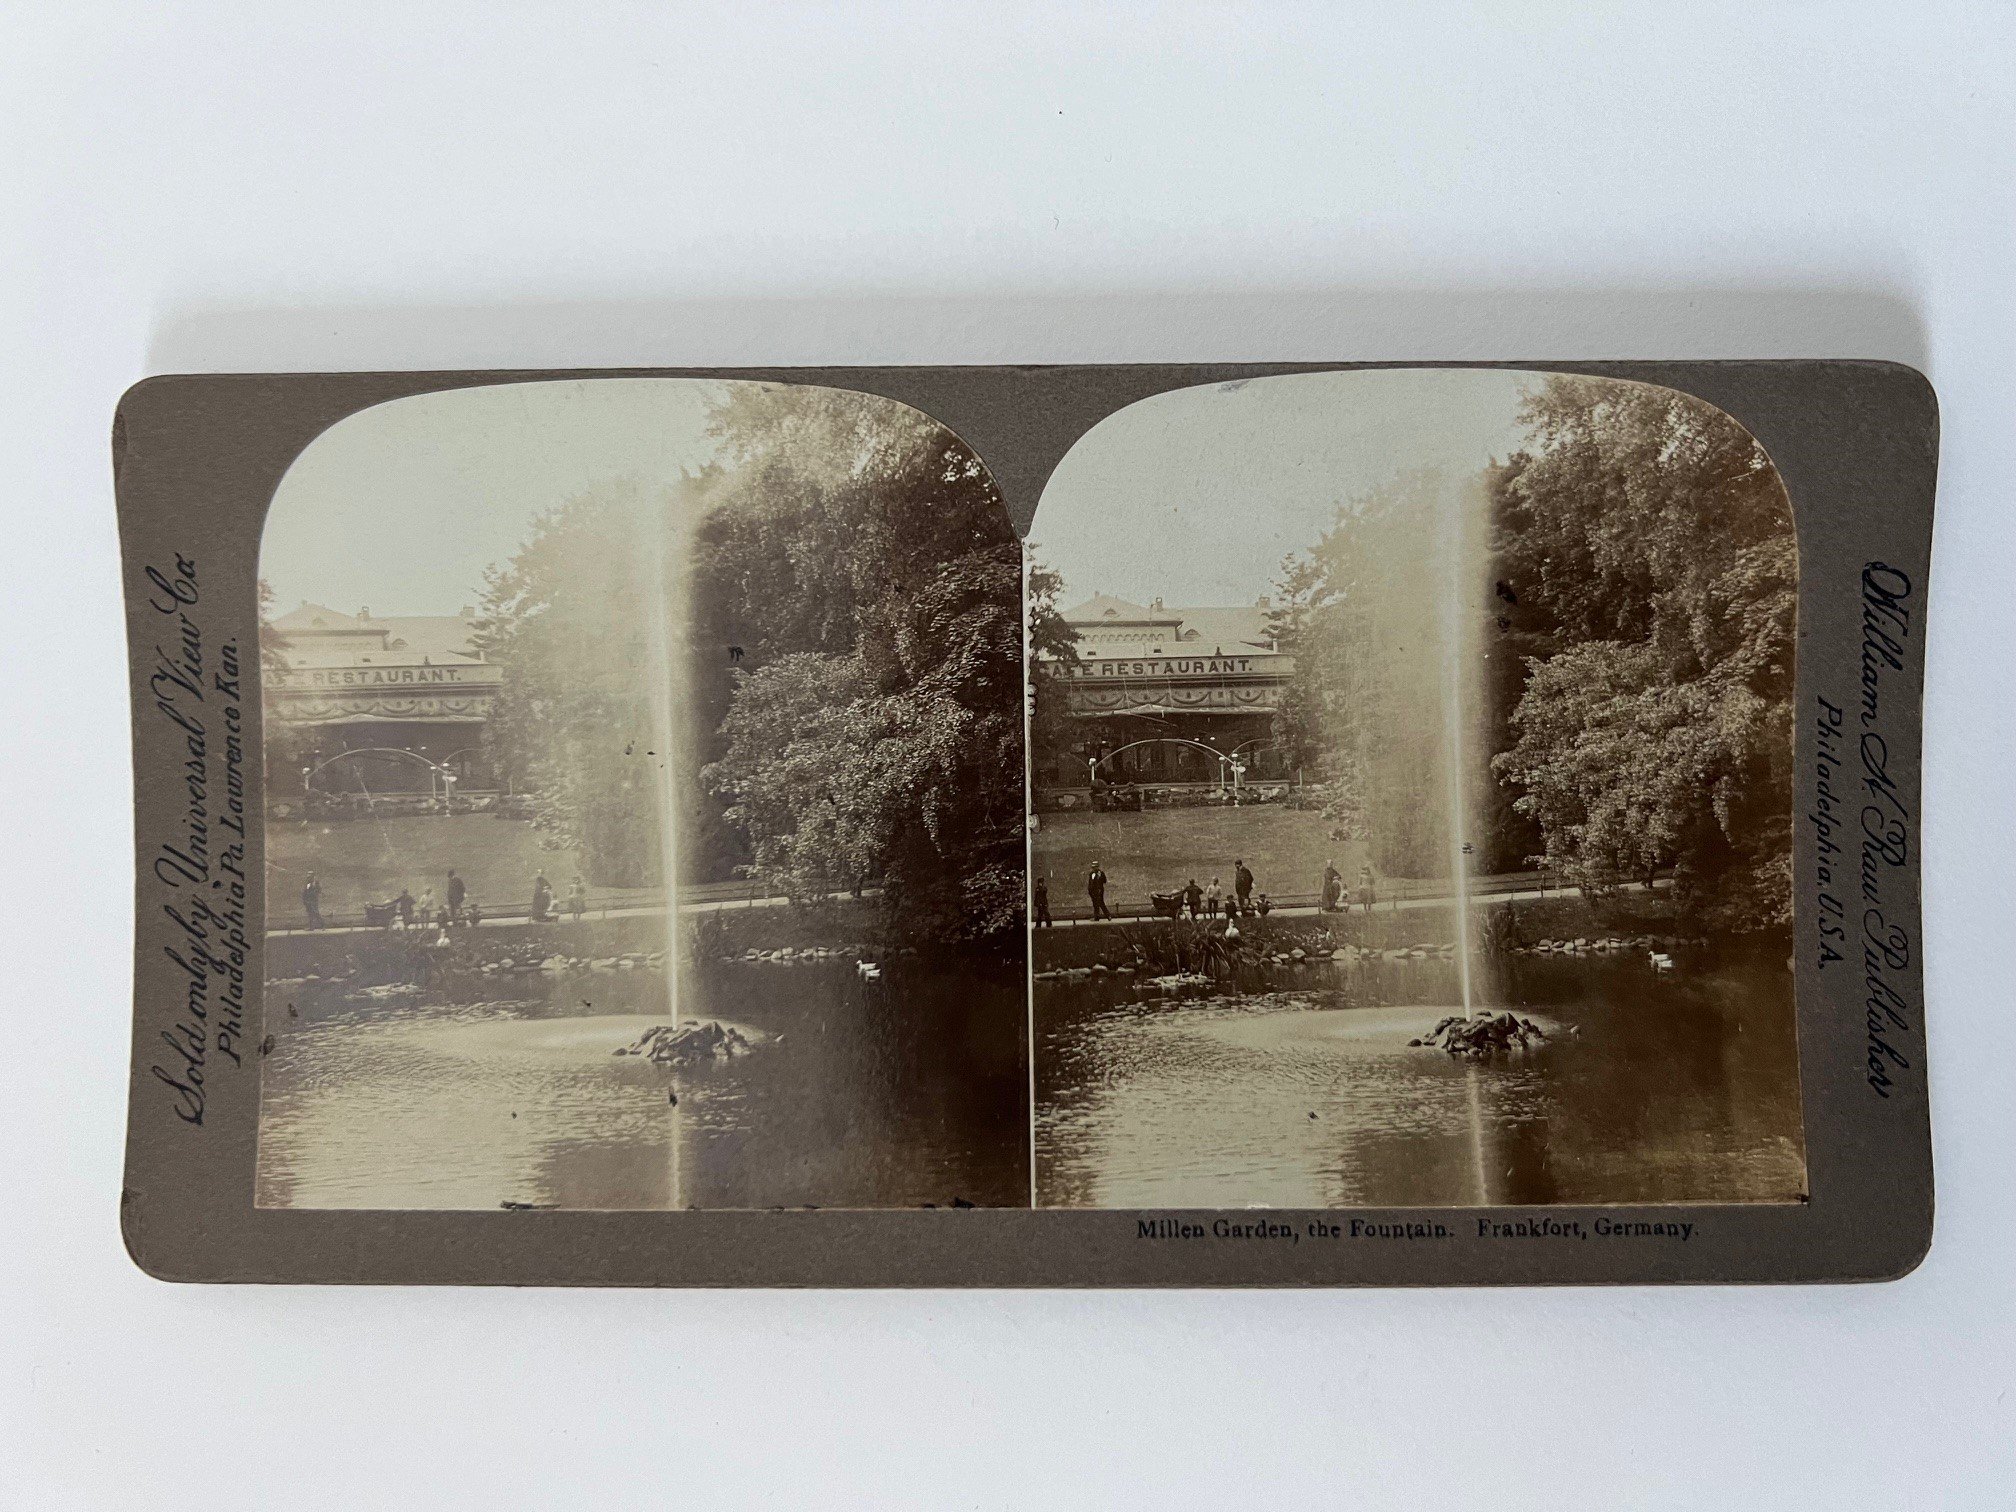 Stereobild, H. C. White & Co, Frankfurt, Nr. 2241, Eschenheimer Thurm, ca. 1910. (Taunus-Rhein-Main - Regionalgeschichtliche Sammlung Dr. Stefan Naas CC BY-NC-SA)